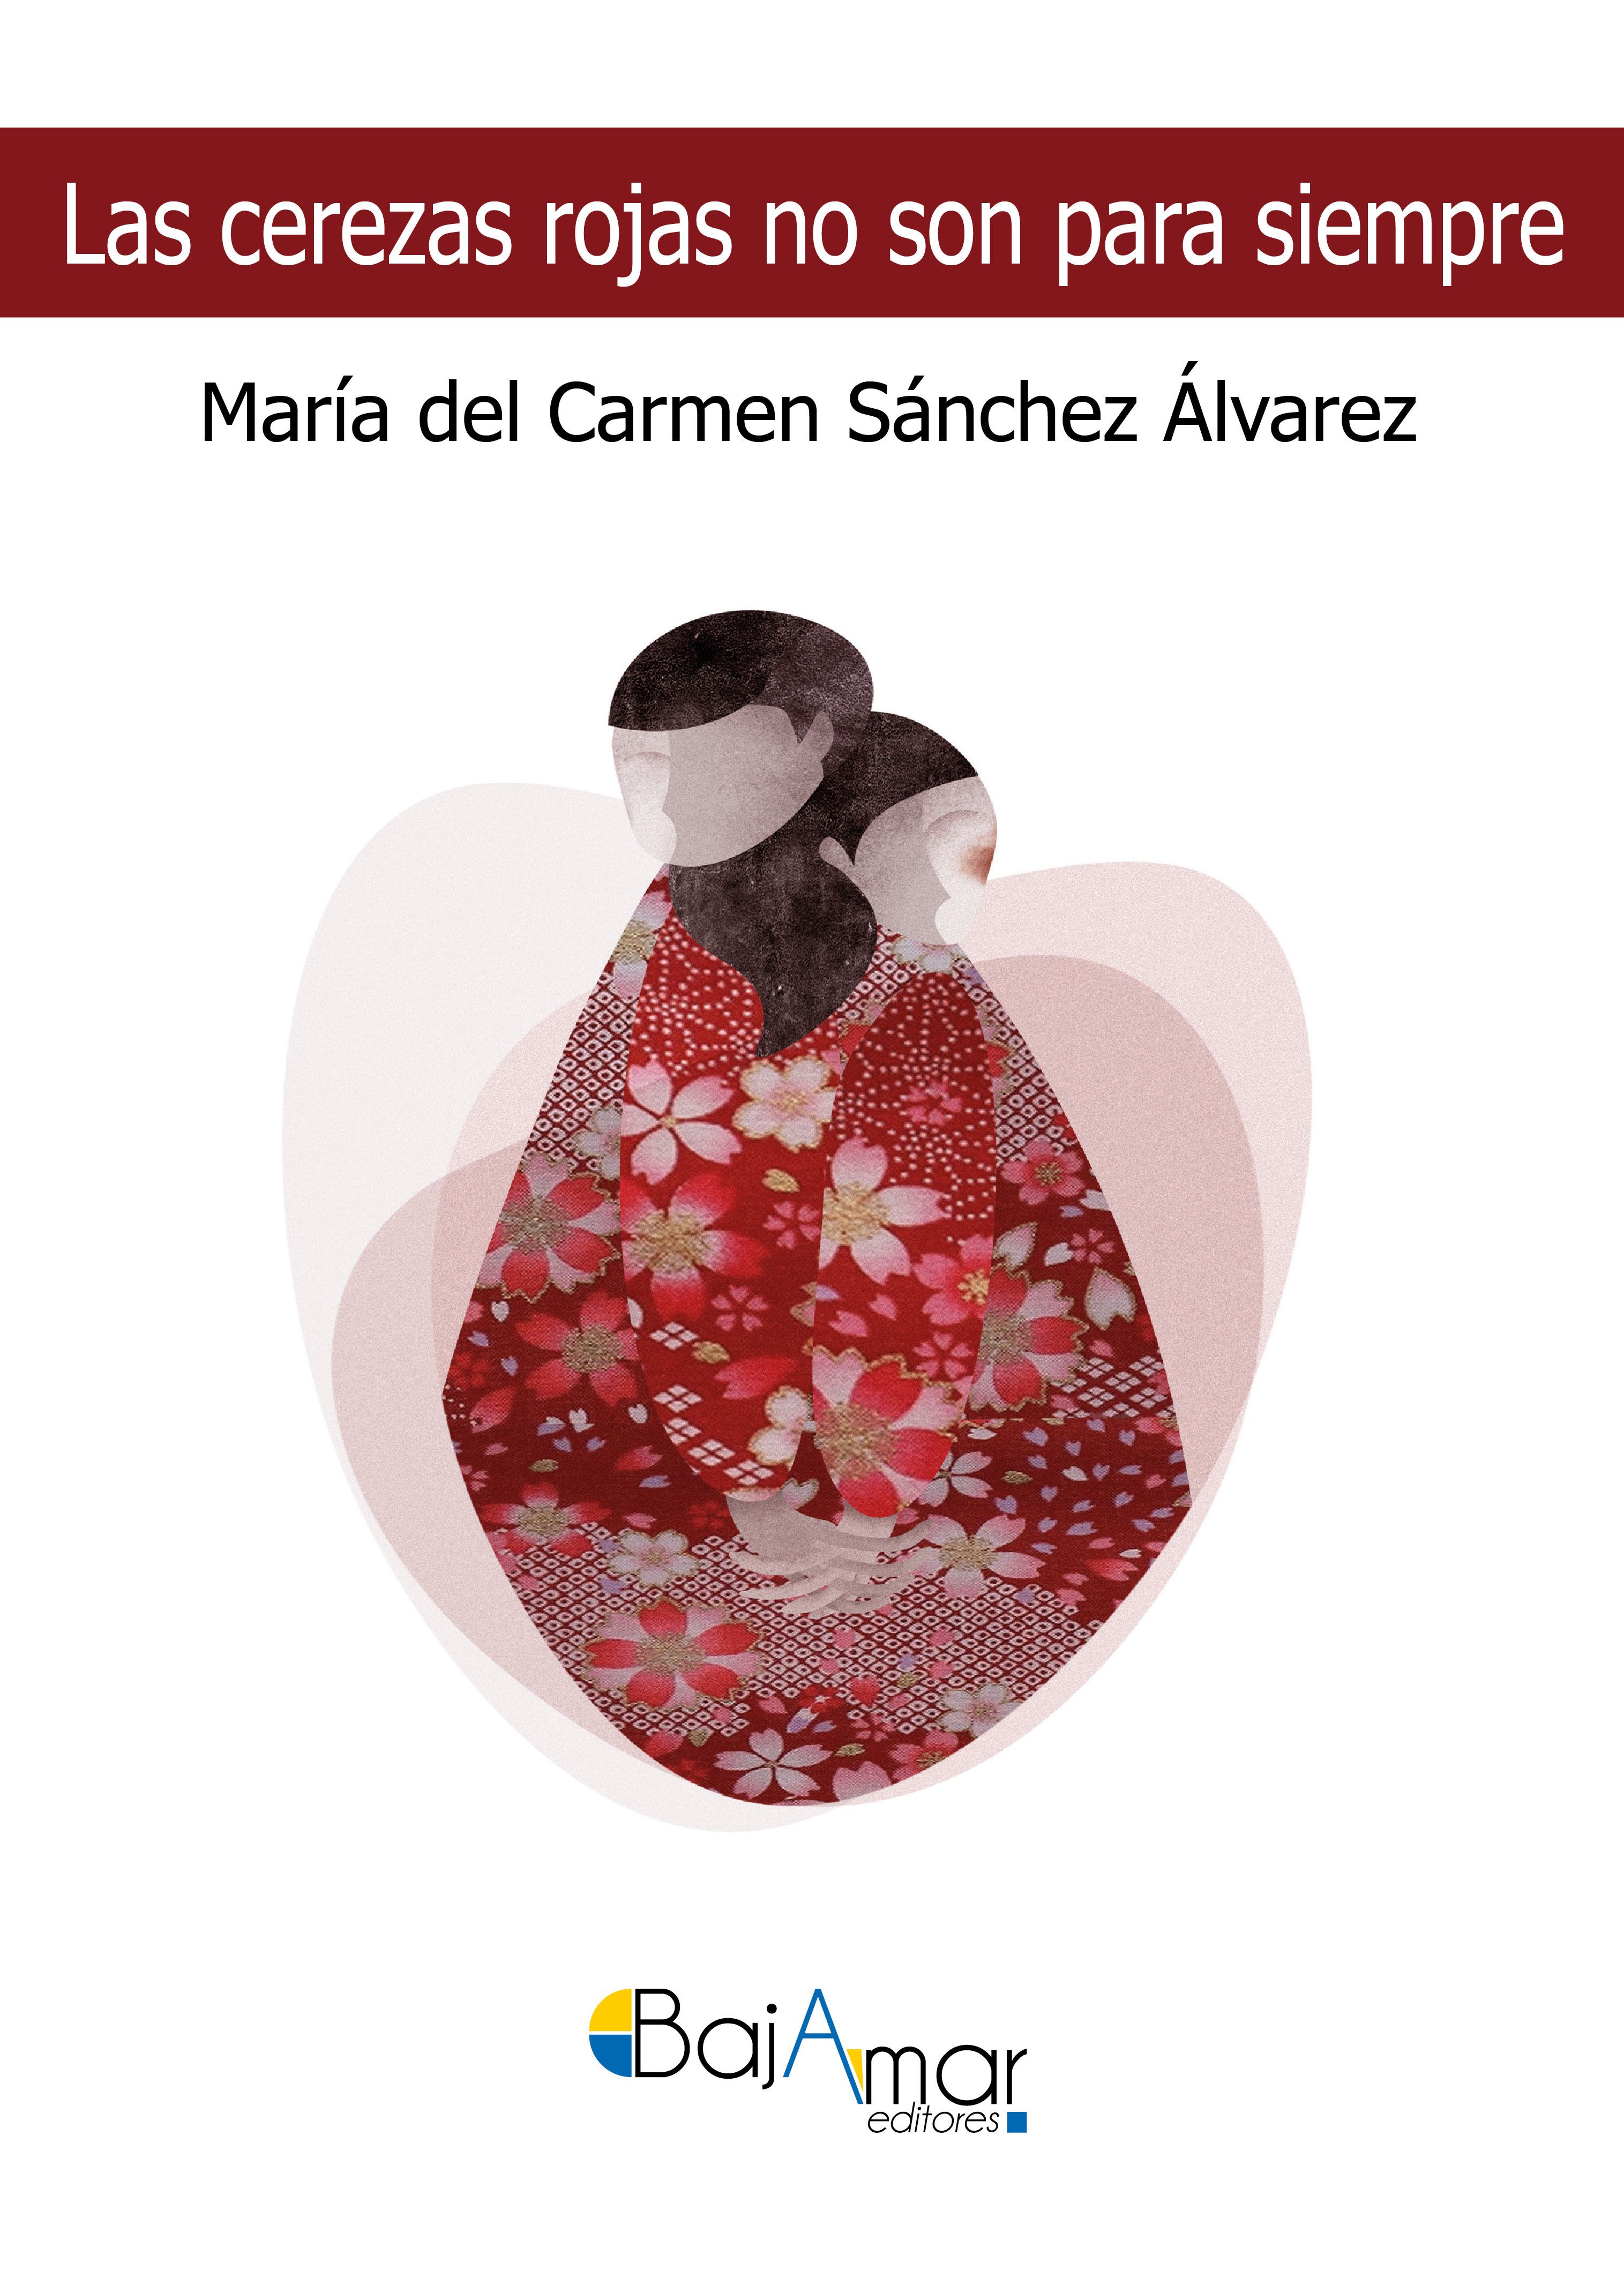 5 poemas de «Las cerezas rojas no son para siempre», de Carmen Sánchez Álvarez